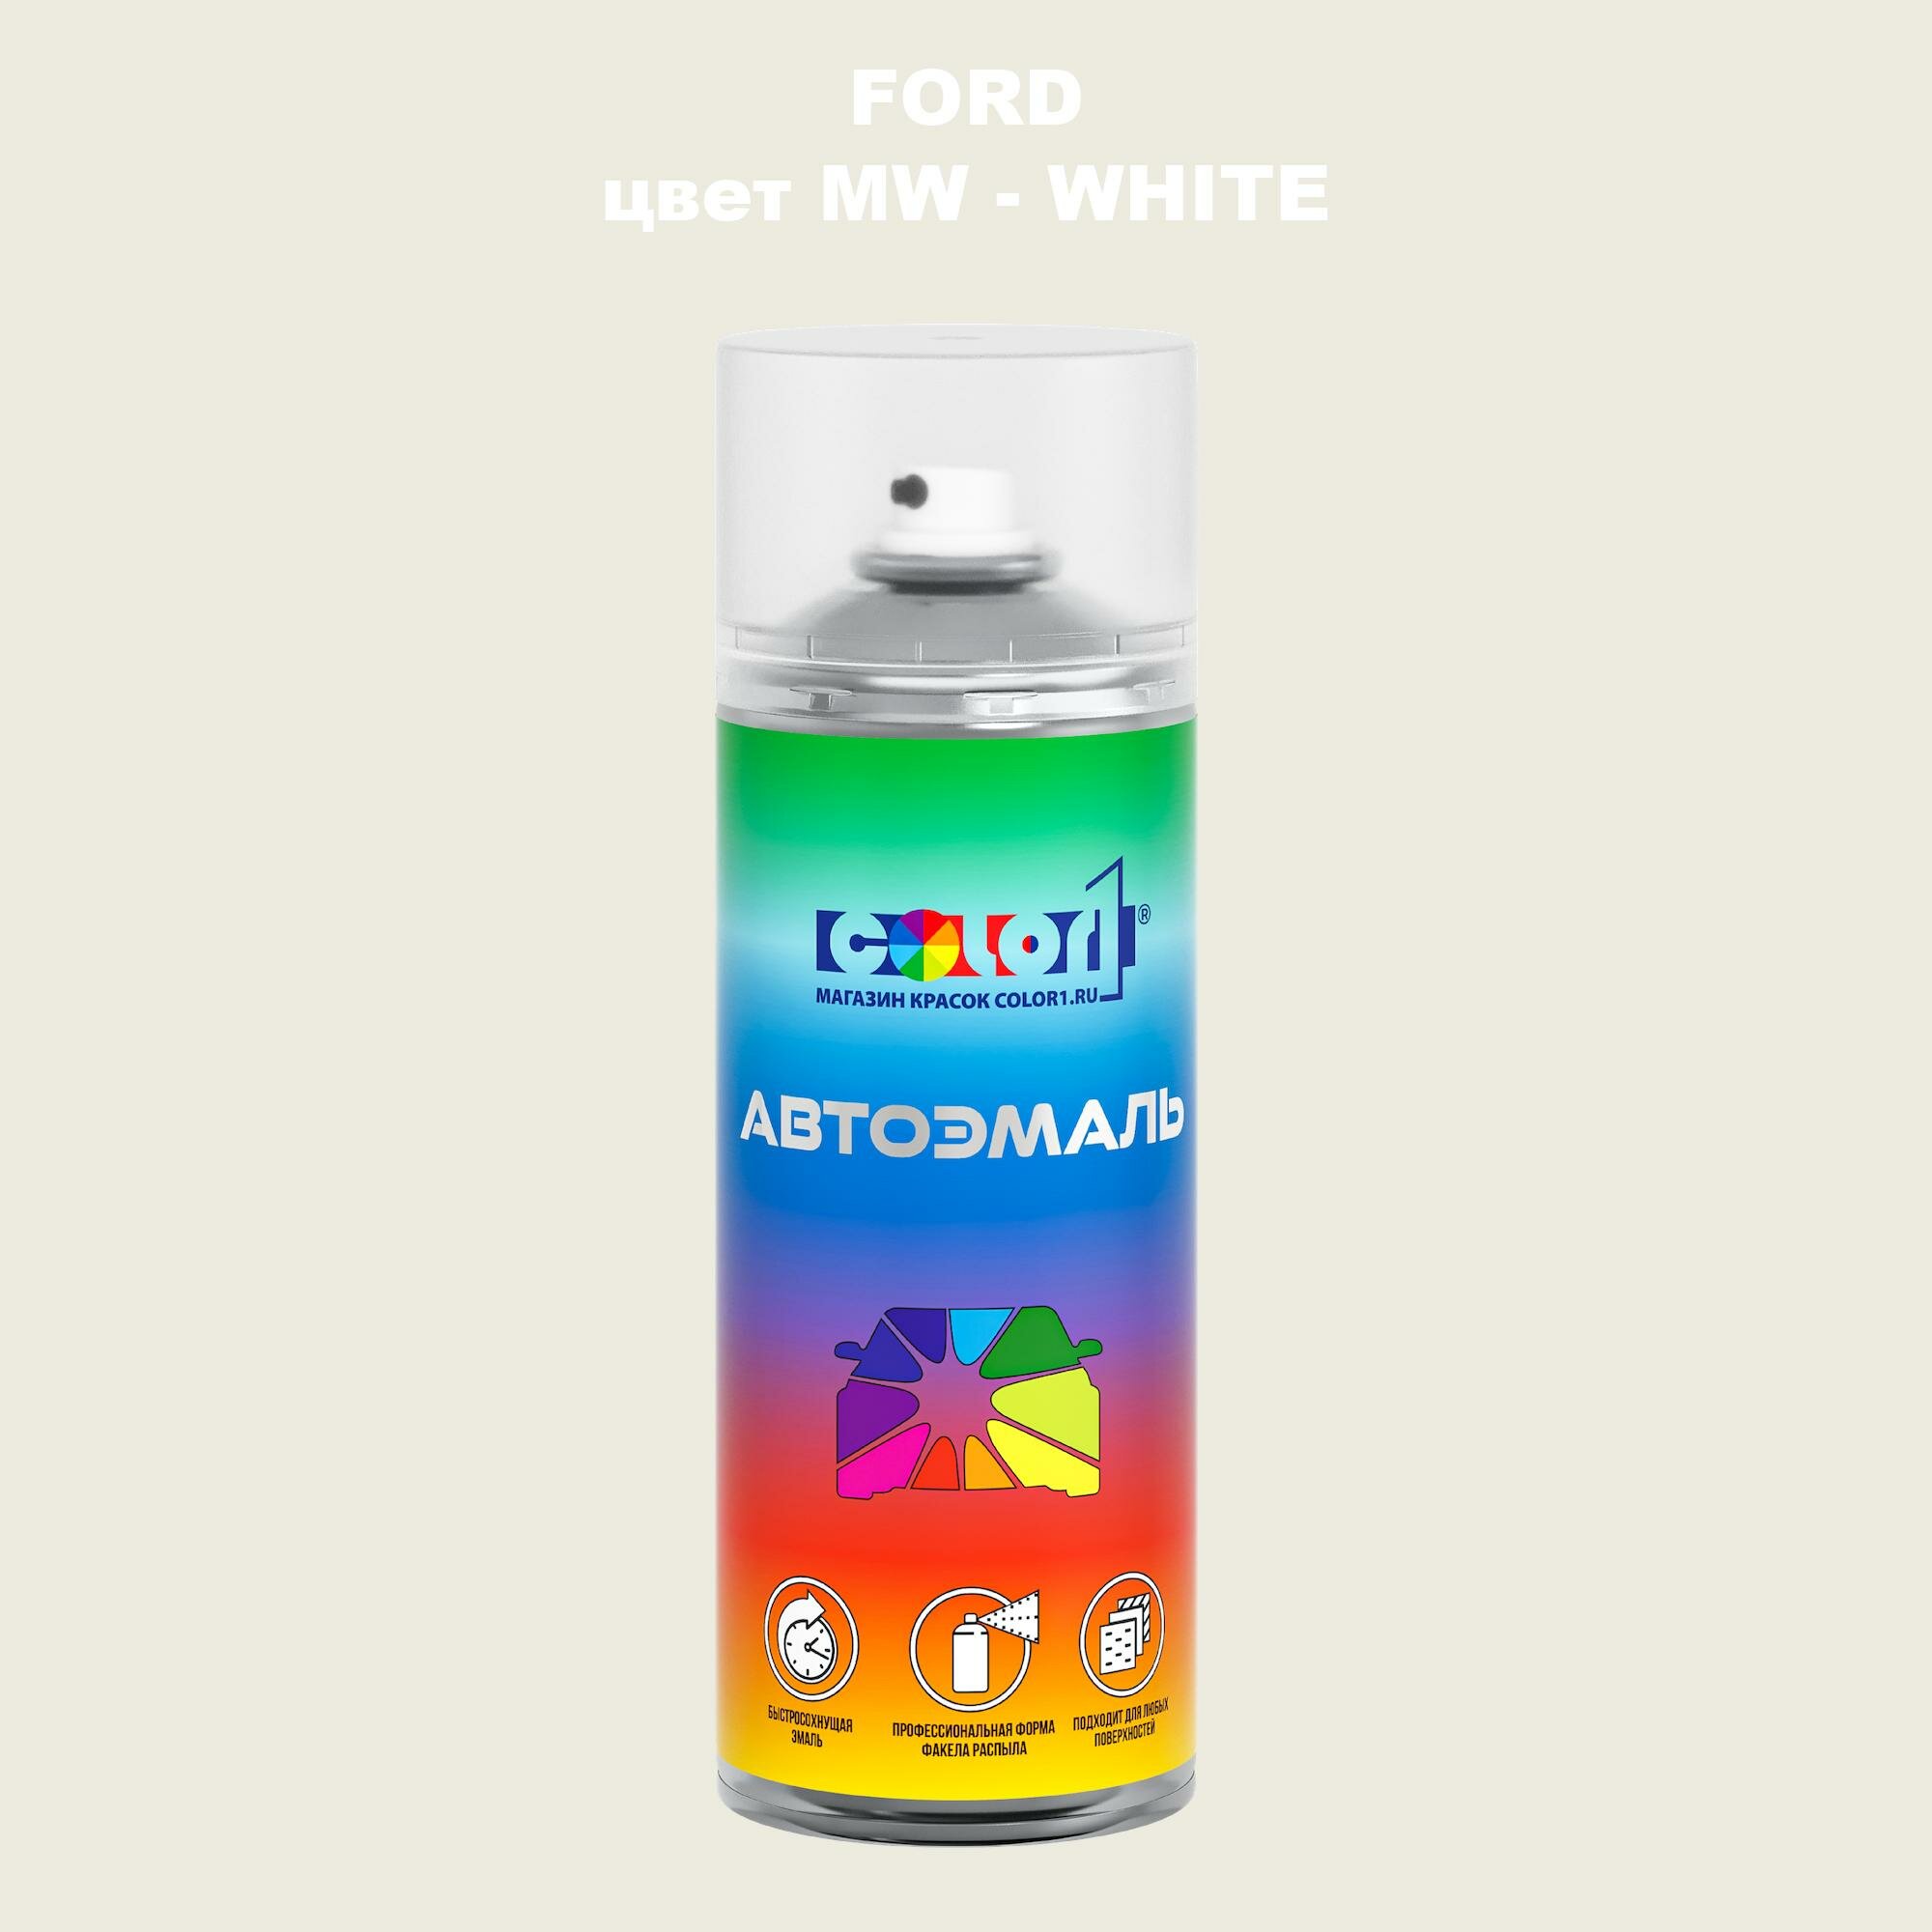 Аэрозольная краска COLOR1 для FORD, цвет MW - WHITE